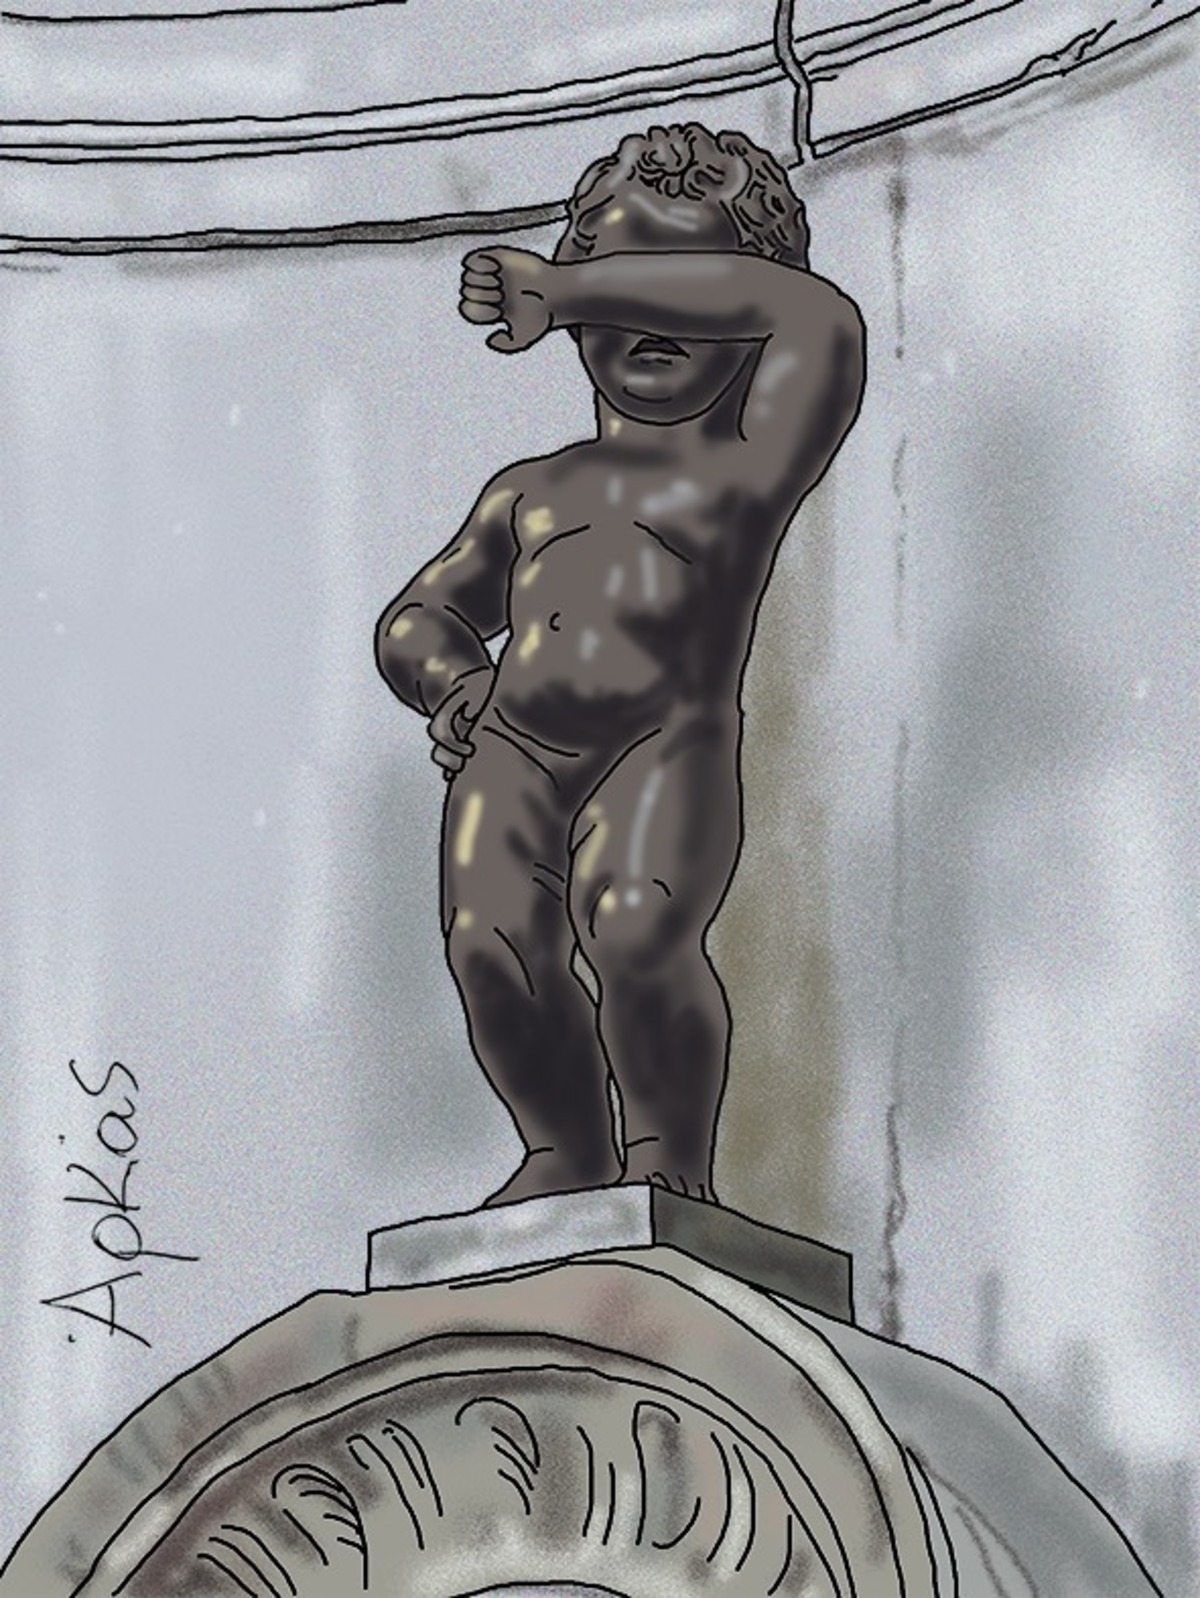 Βρυξέλλες: Το συγκινητικό σκίτσο του Αρκά μετά το τρομοκρατικό χτύπημα